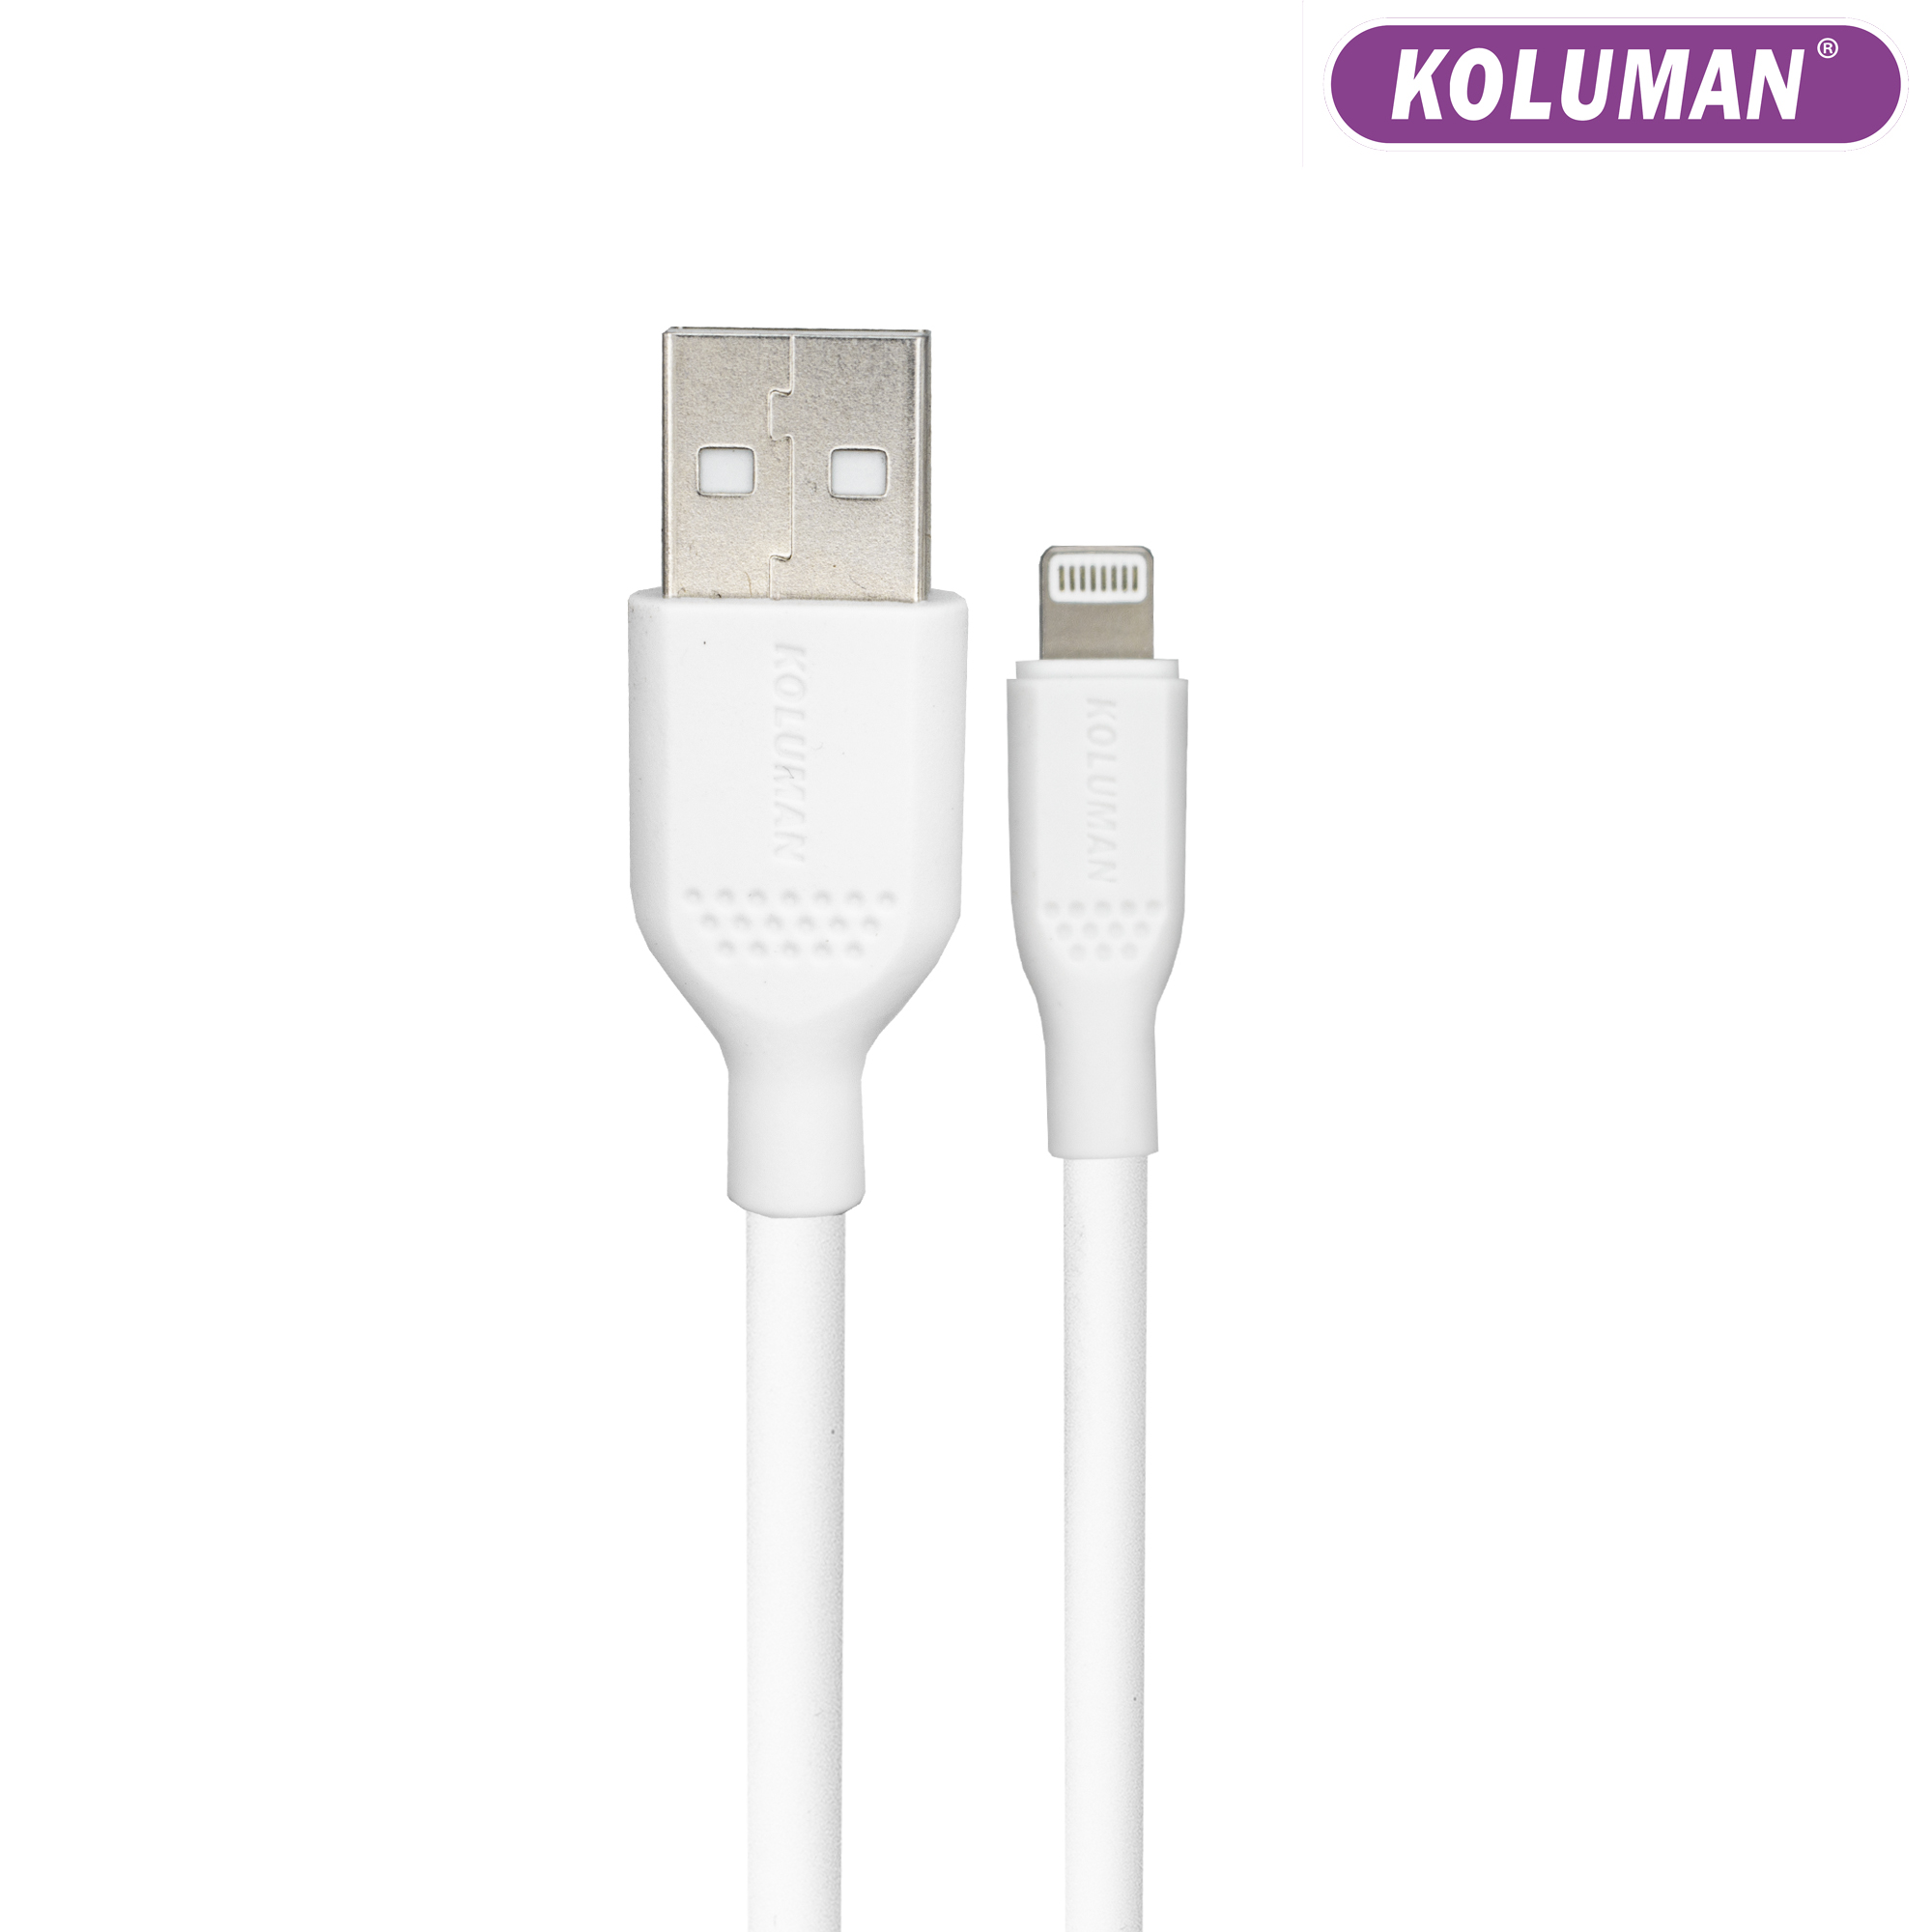 قیمت و خرید کابل تبدیل USB به لایتنینگ کلومن مدل KD - 02 طول 1 متر